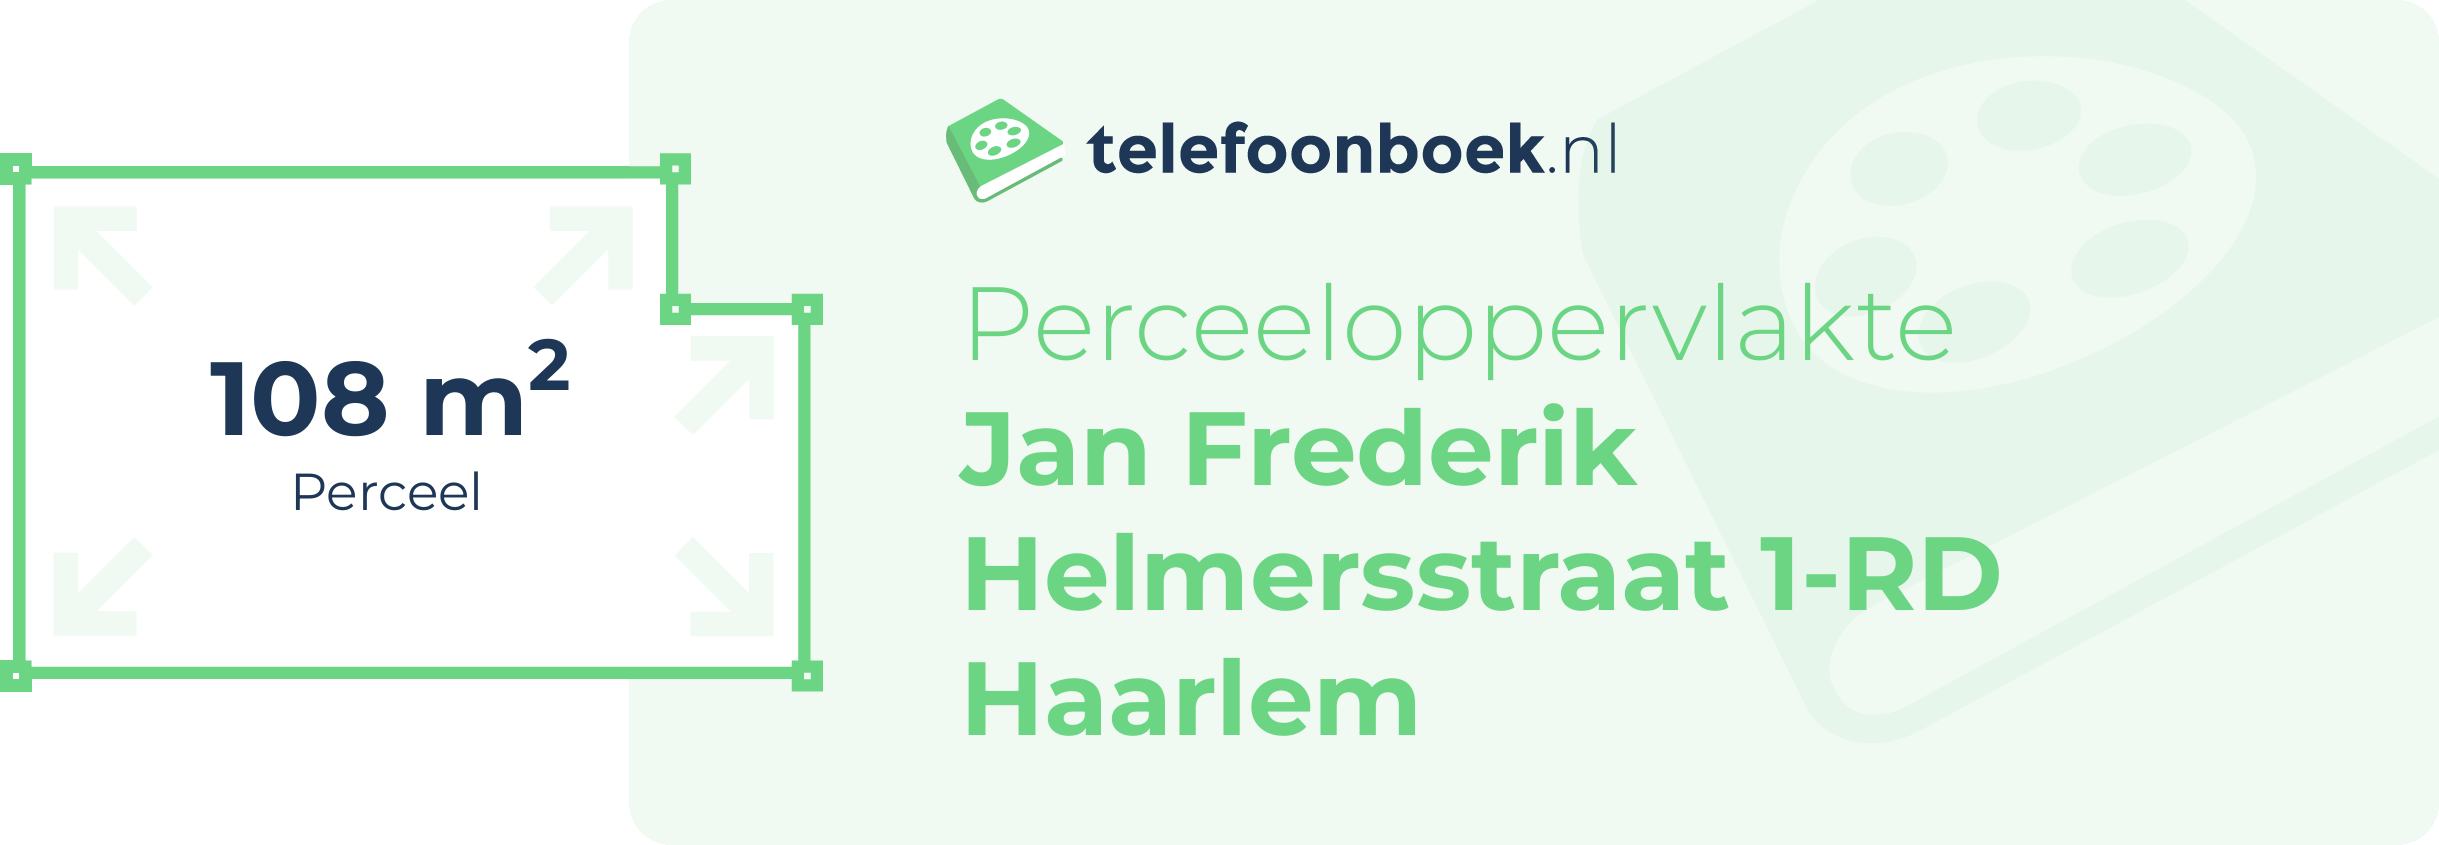 Perceeloppervlakte Jan Frederik Helmersstraat 1-RD Haarlem